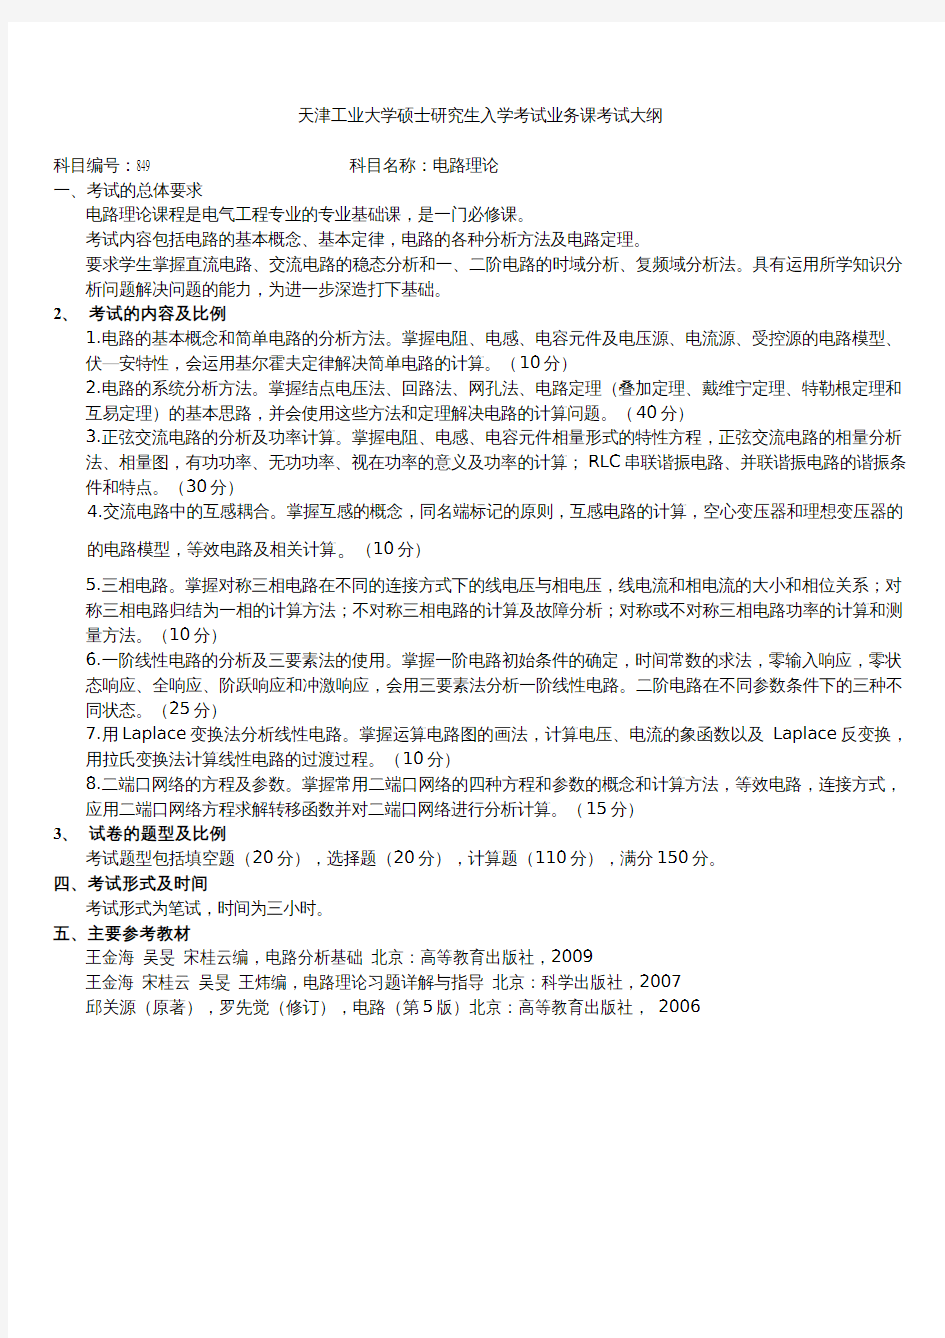 天津工业大学2020考研初试自命题科目考试大纲849电路理论